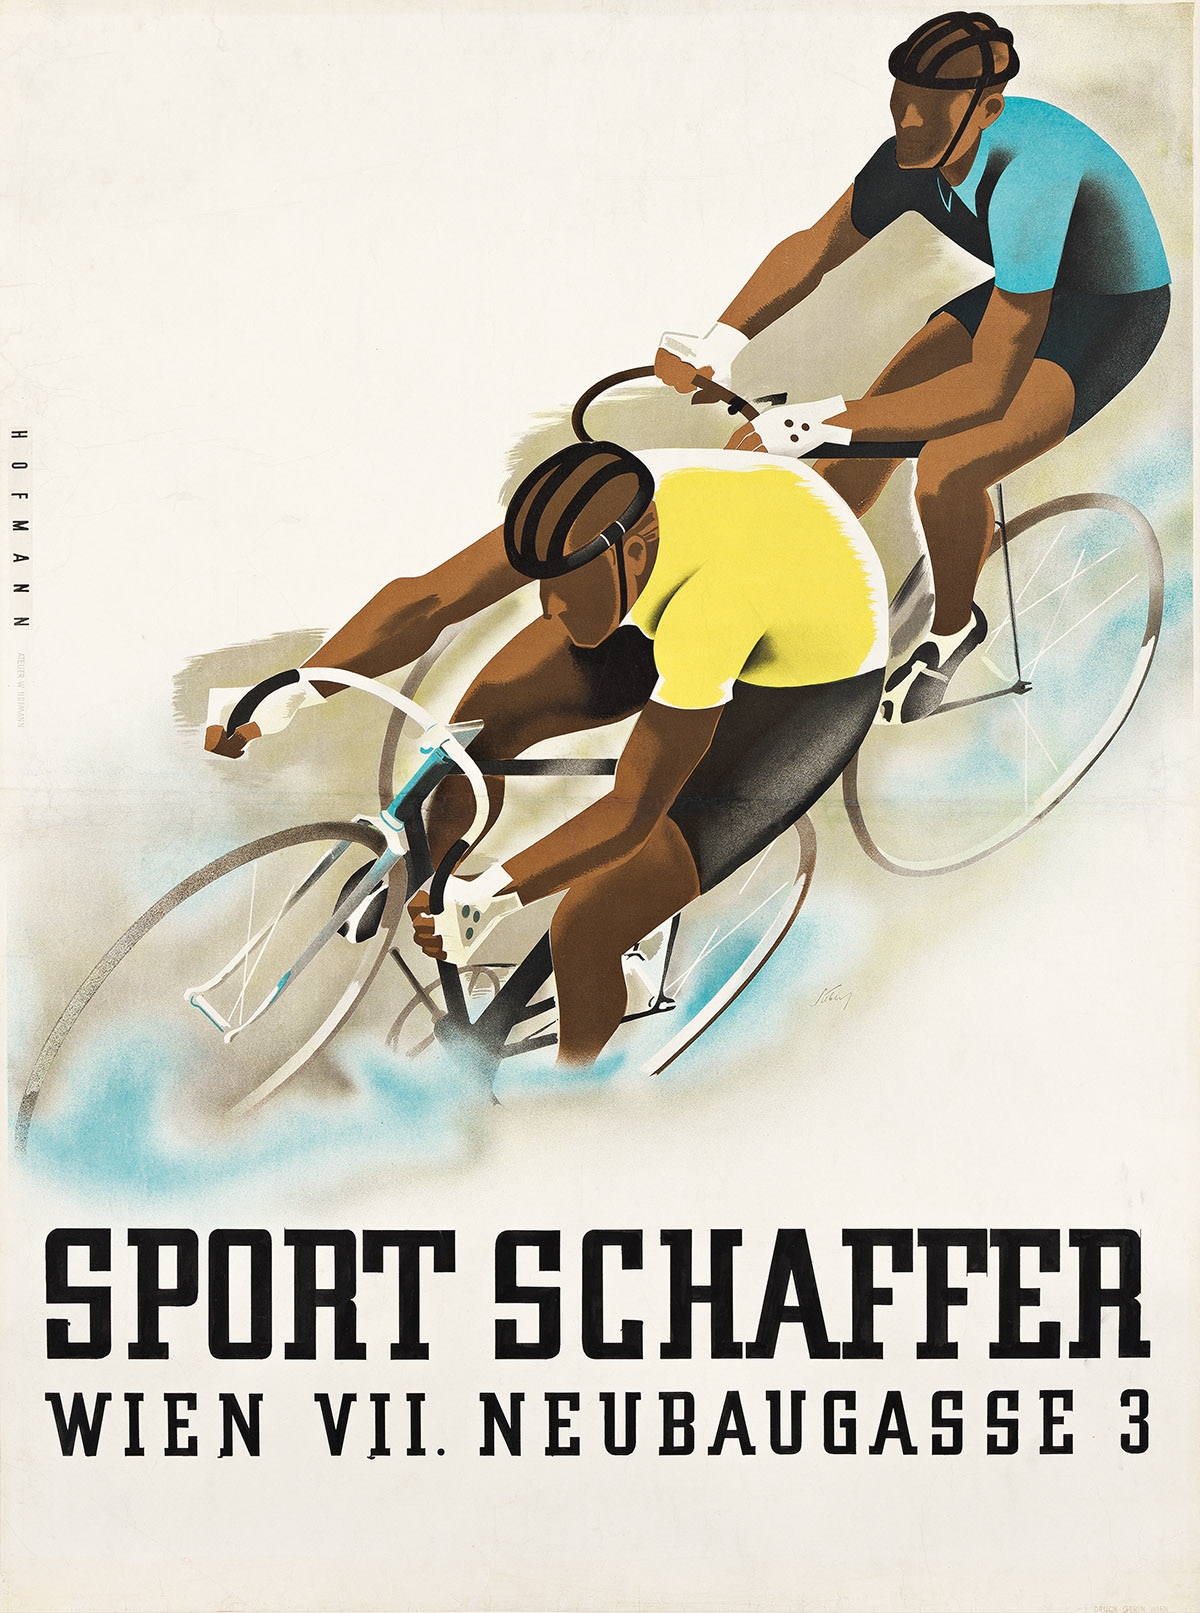 SPORT SCHAFFER. Circa 1940s by Walter Hofmann